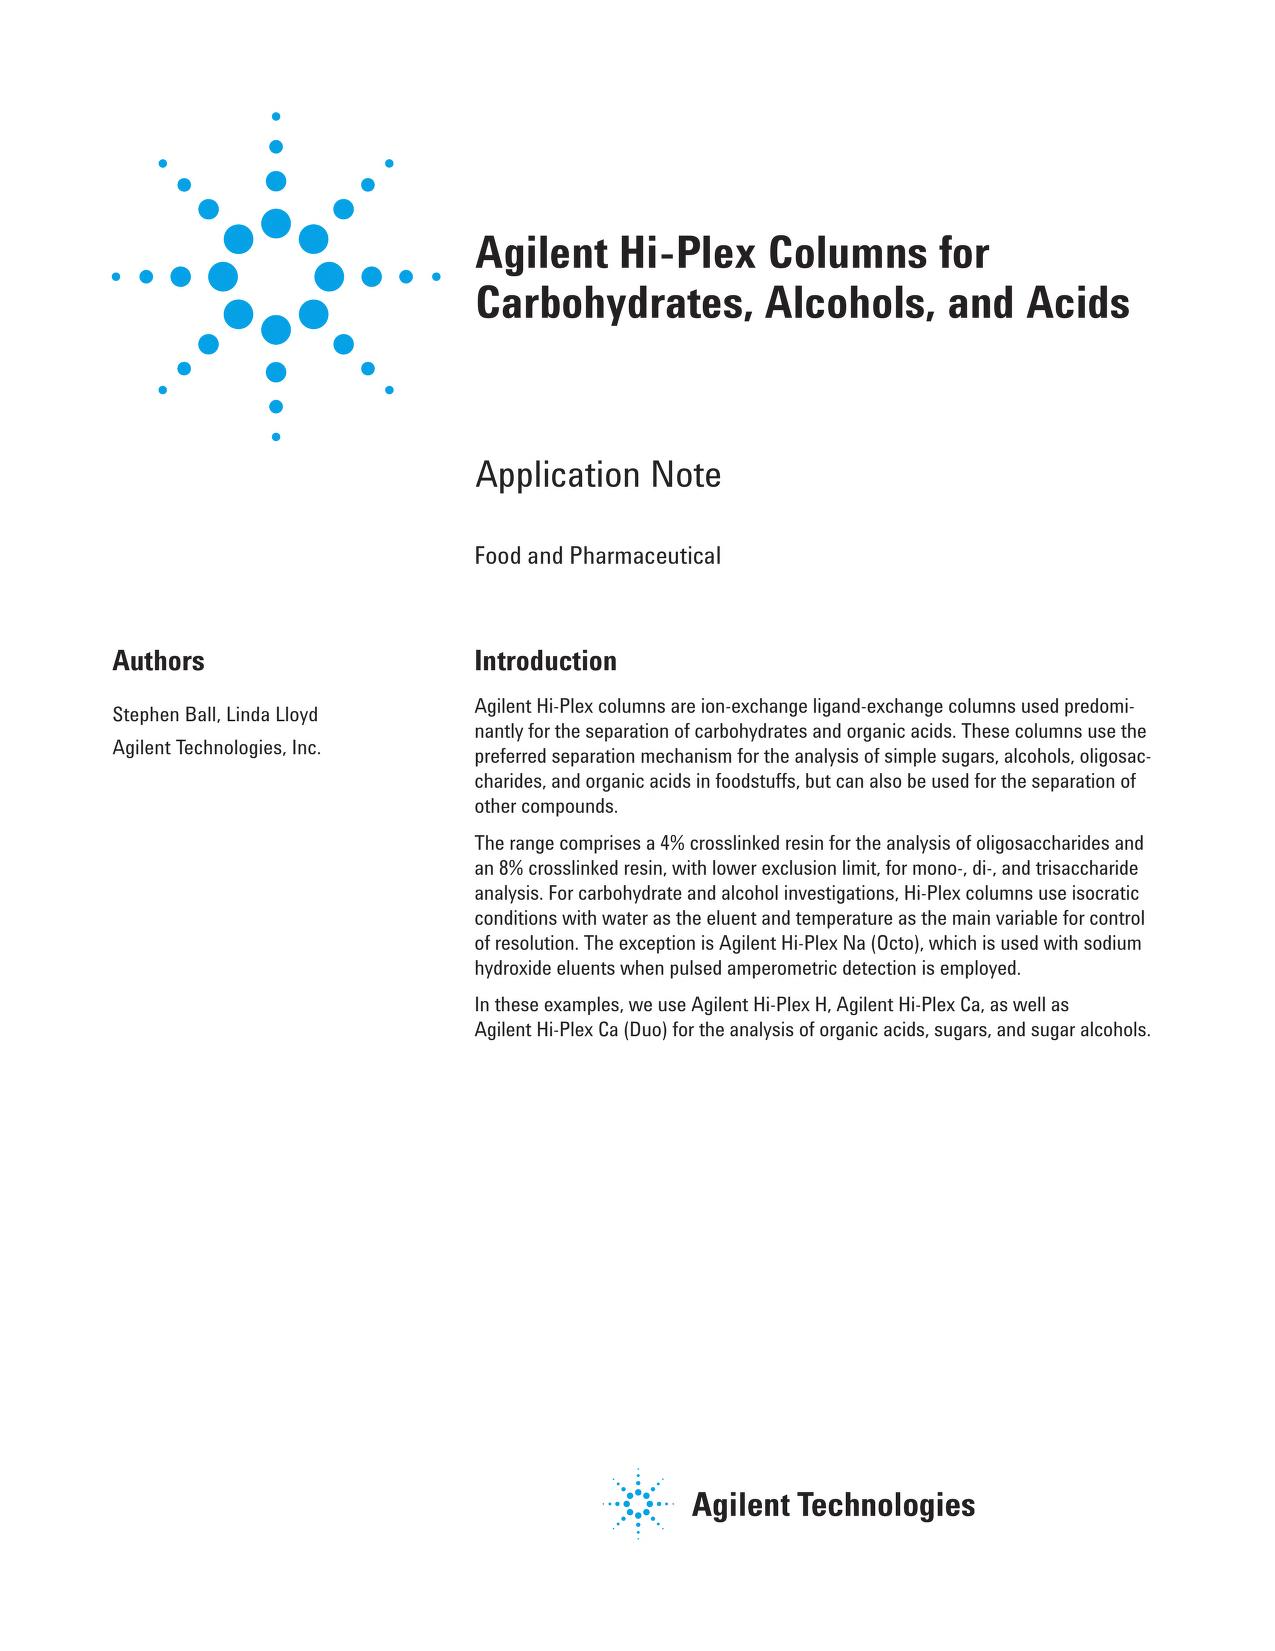 Agilent Hi-Plex Columns for Carbohydrates Alcohols Acids handbook 